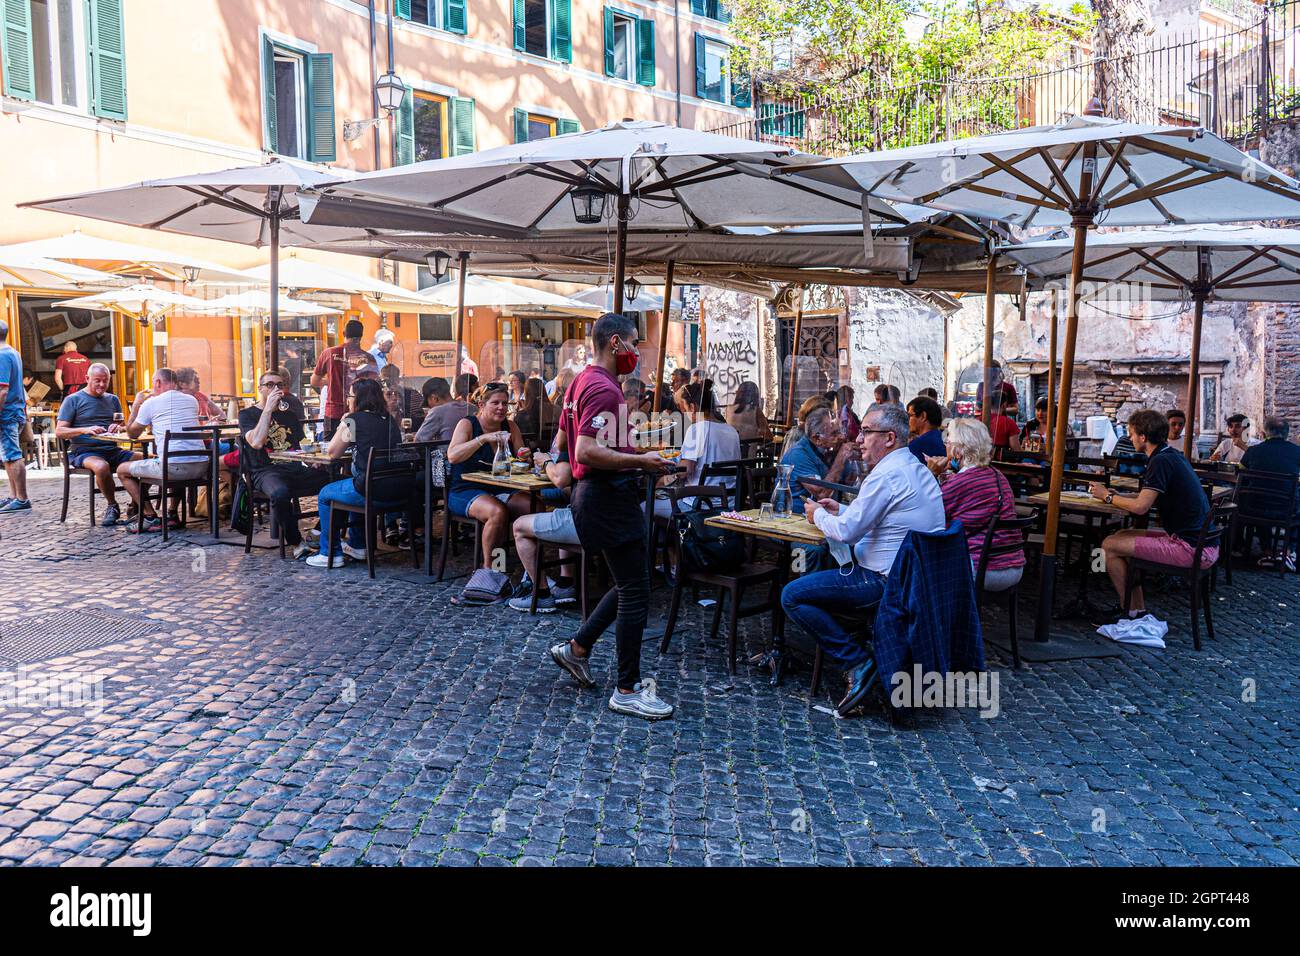 ROME ITALIE, ROYAUME-UNI. 30 septembre 2021. Les personnes qui dînent en plein air dans le quartier de Trastevere à l'heure du déjeuner, par une journée chaude et humide. Depuis que le gouvernement italien a commencé à relâcher les règles sur le verrouillage plus de personnes sont vues manger dans les restaurants à l'intérieur et à l'extérieur. Les clients assis à l'intérieur doivent présenter un Green Pass qui certifie que le détenteur est vacciné à deux fois et qu'il n'a pas de covid. Credit: amer ghazzal / Alamy Live News Banque D'Images